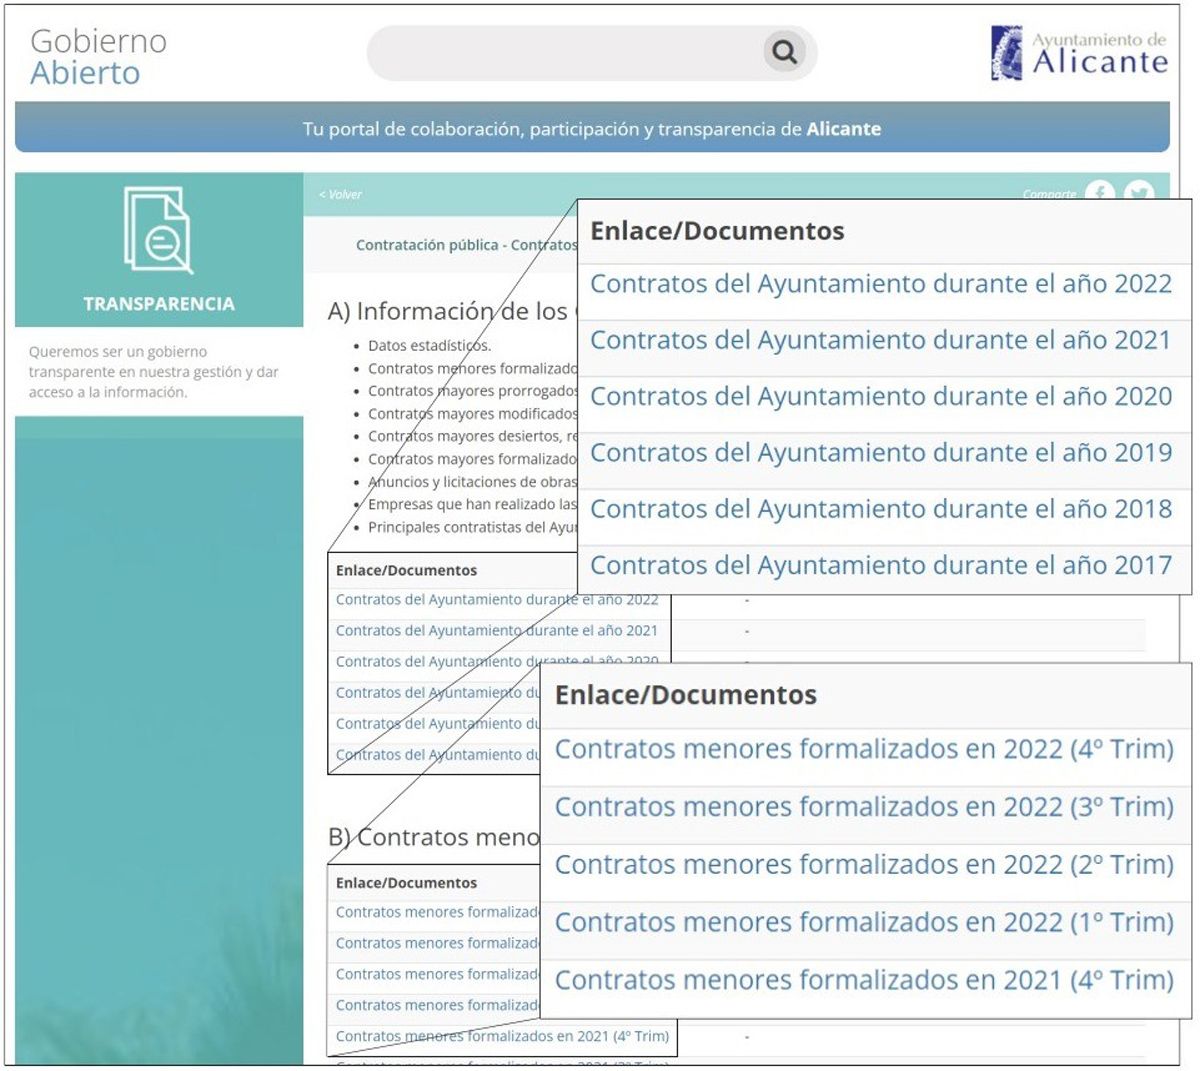 Captura de pantalla del portal de Transparencia del Ayuntamiento de Alicante tomada el viernes 11 de agosto.